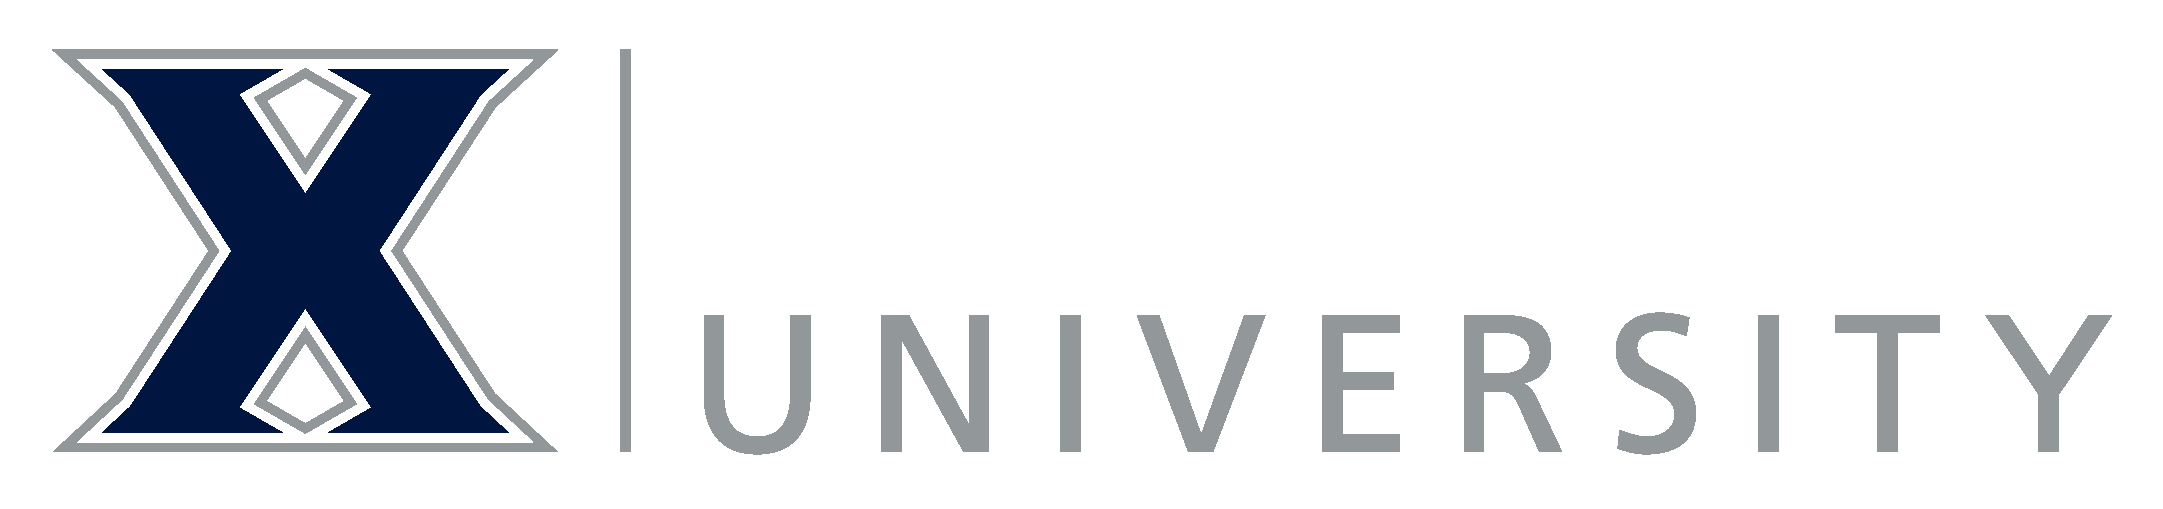 Xavier logo in footer